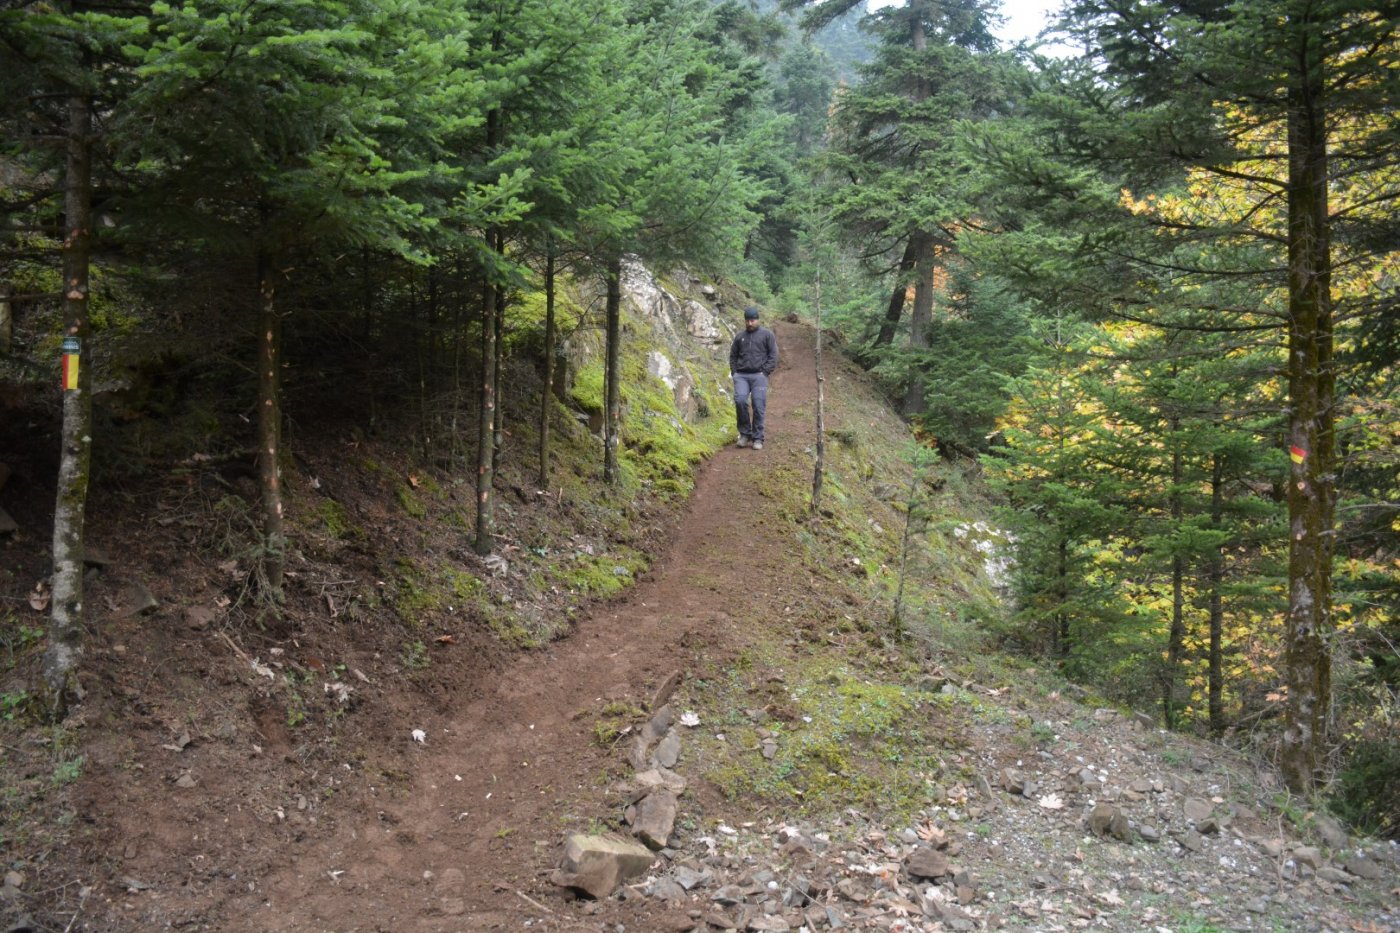 N.E. Vardousia / Opening the old Ath. Diakos - Mousounitsa forest path / Pindus trail